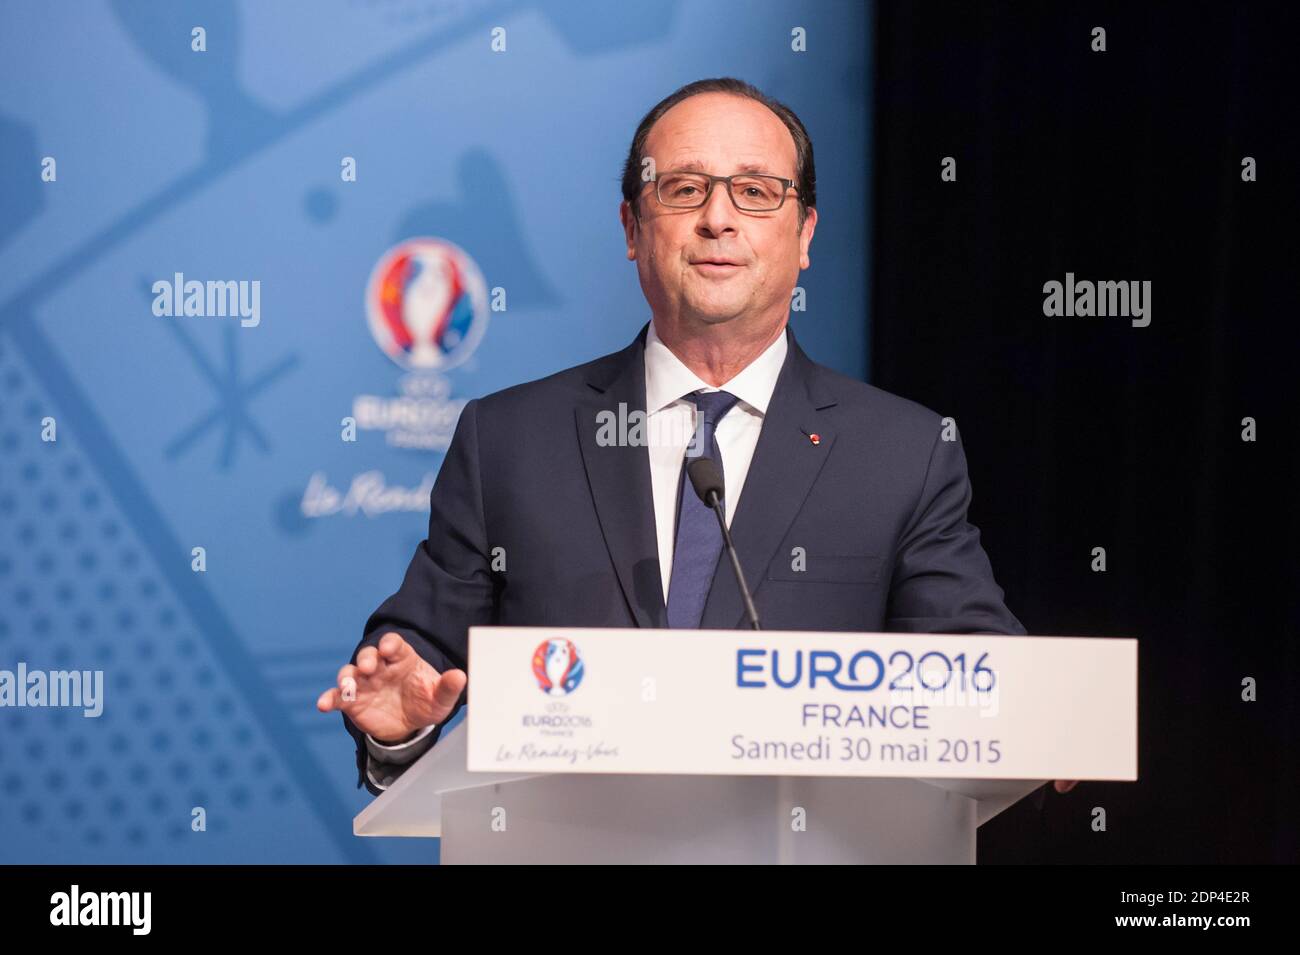 Il presidente francese Francois Hollande ha pronunciato il suo discorso durante una conferenza stampa per presentare i membri del '11 Tricolores', un comitato per promuovere l'offerta UEFA euro 2016 in Francia, presso l'auditorium dello Stade de France a Saint-Denis, vicino a Parigi, Francia, il 30 maggio 2015. Foto di Pool/ABACAPRESS.COM Foto Stock